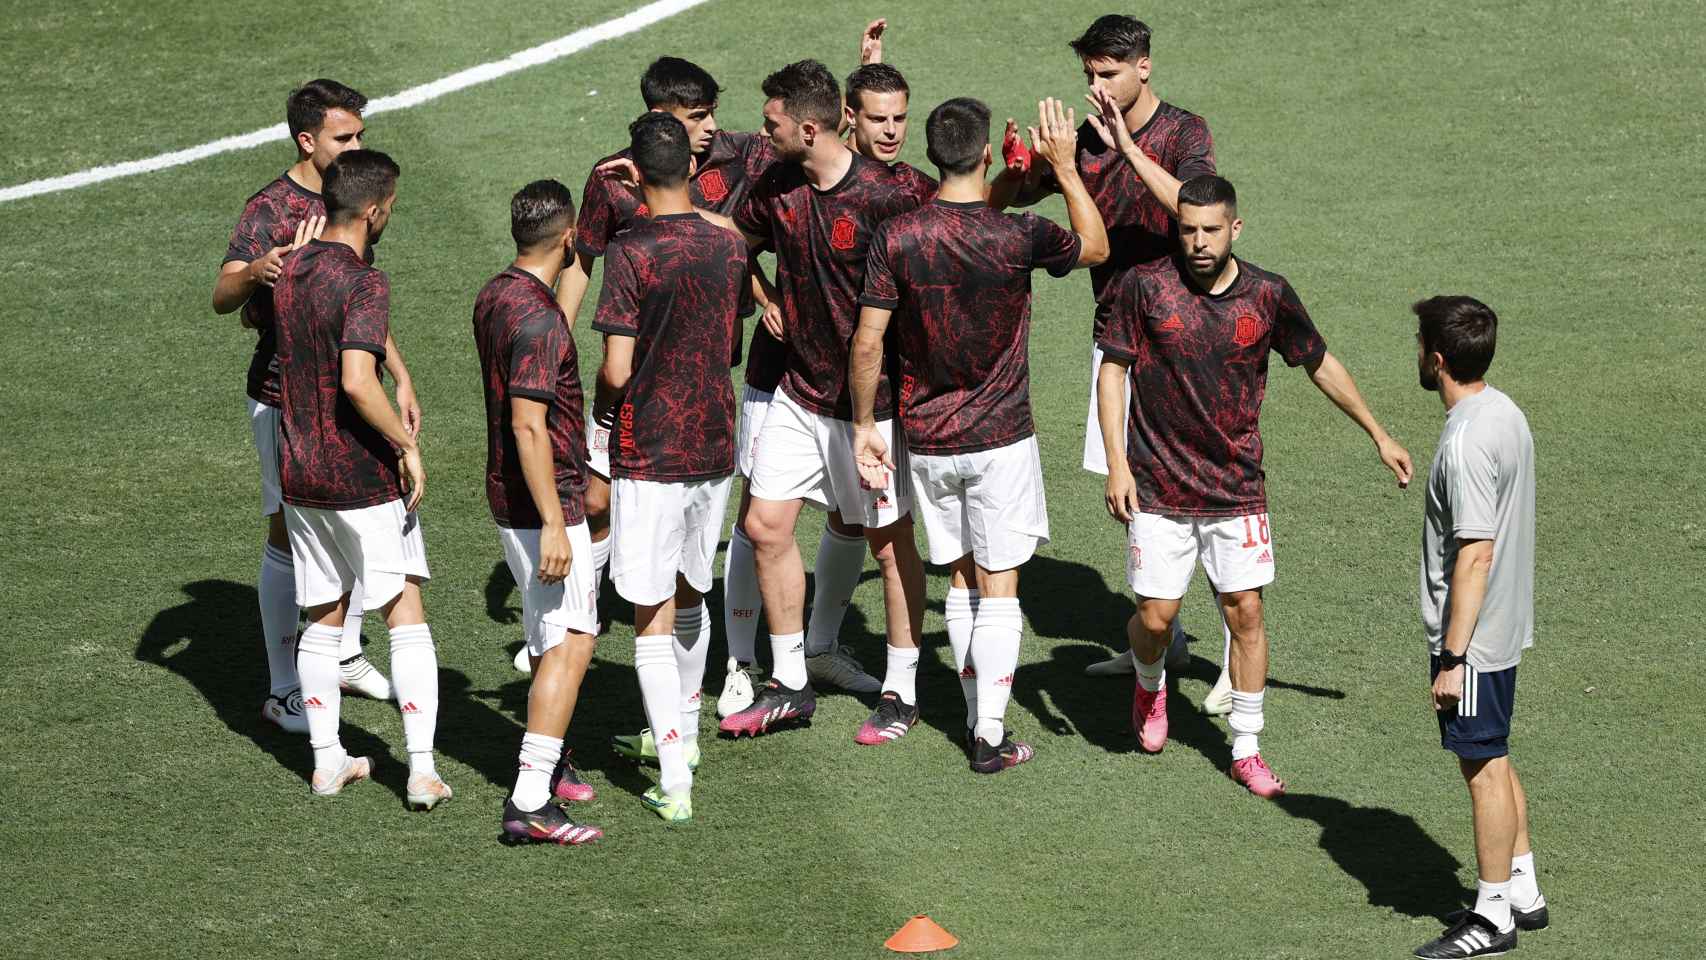 Saludo de los jugadores de la selección española tras acabar el calentamiento